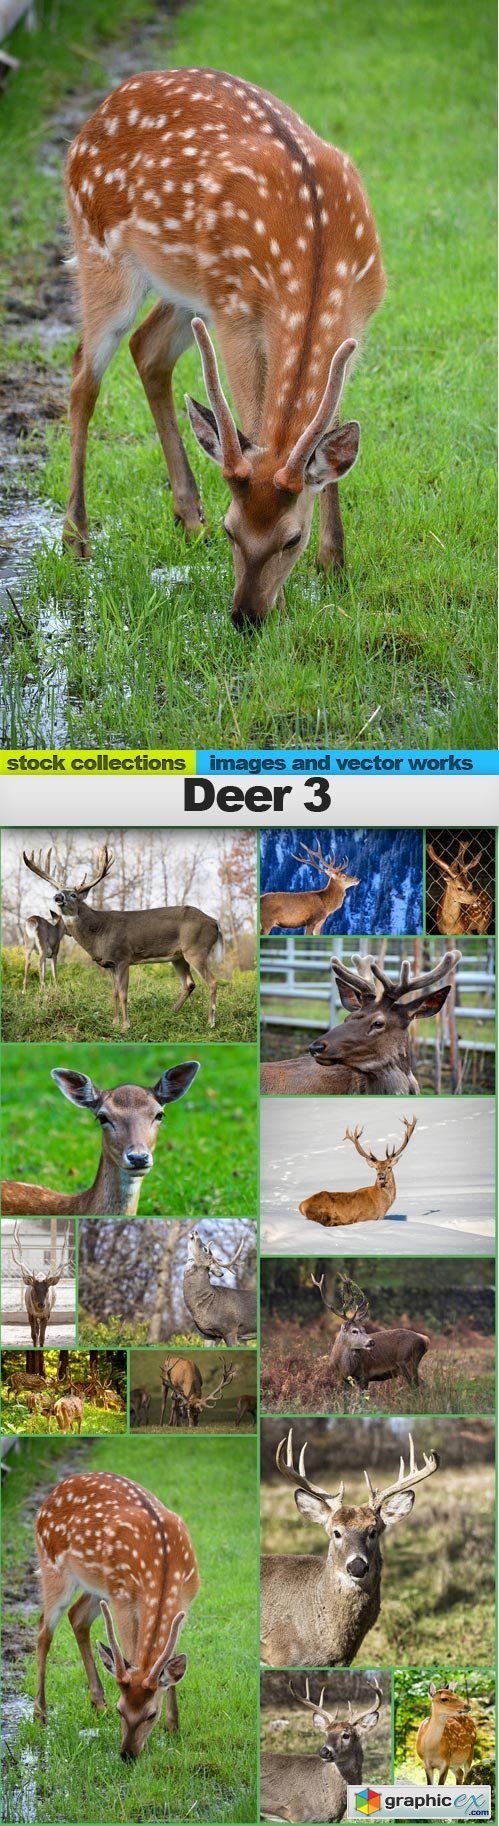 Deer 3, 15 x UHQ JPEG